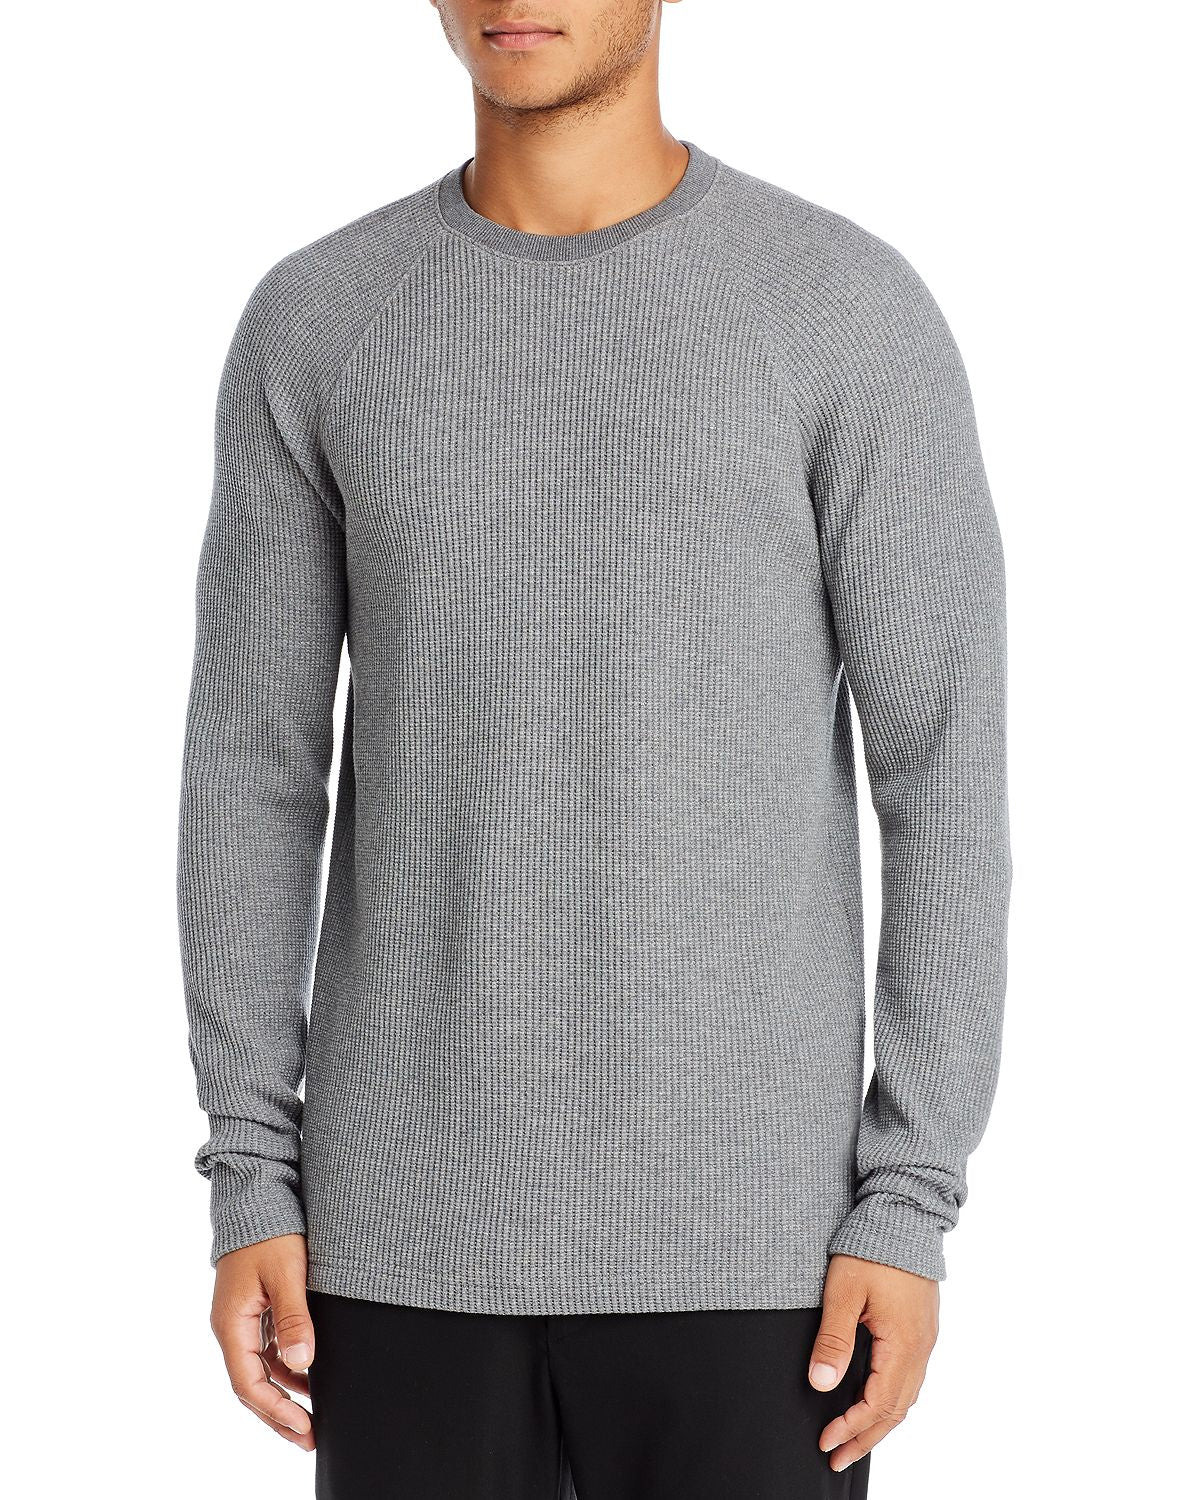 Theory River Waffle Knit Organic Cotton Sweater Medium Gray Heather